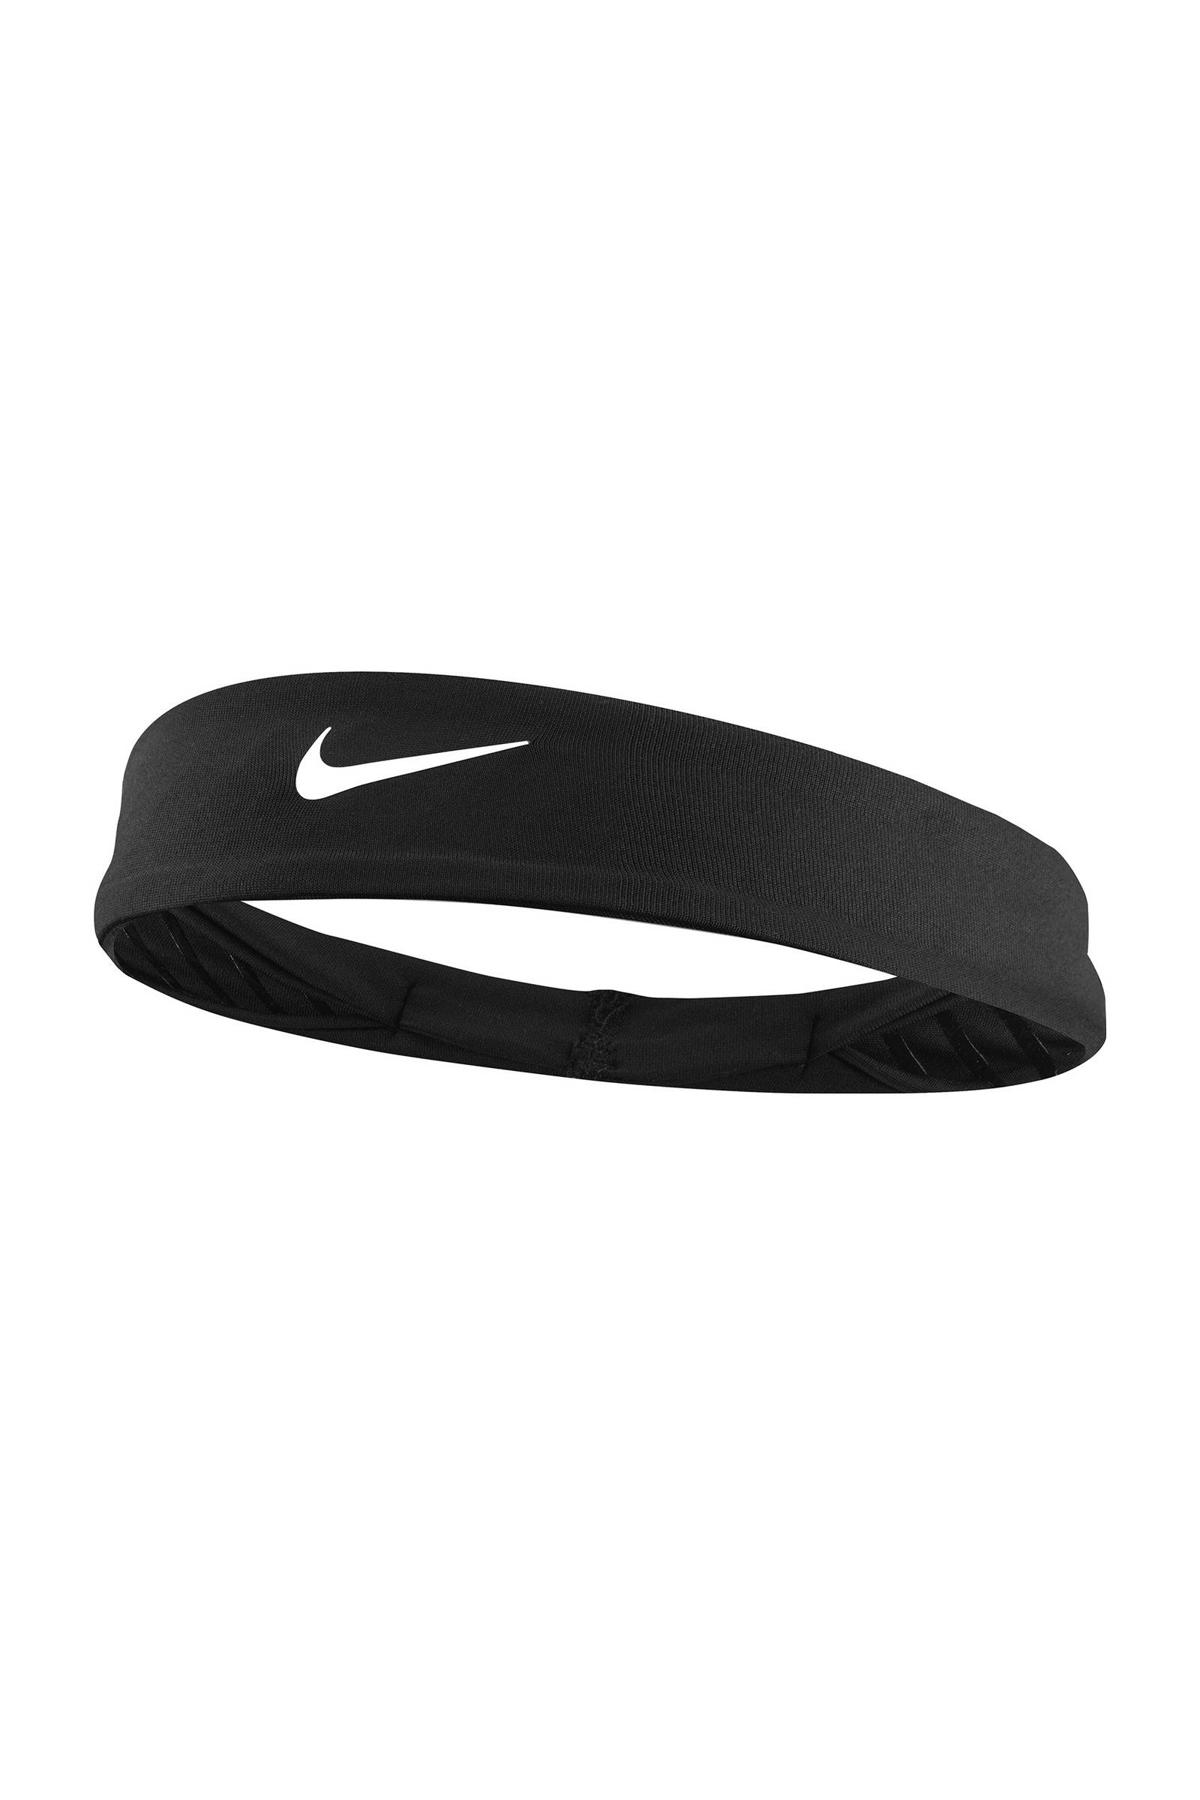 tarief Afstotend open haard Nike hoofdband Elite zwart/wit | wehkamp